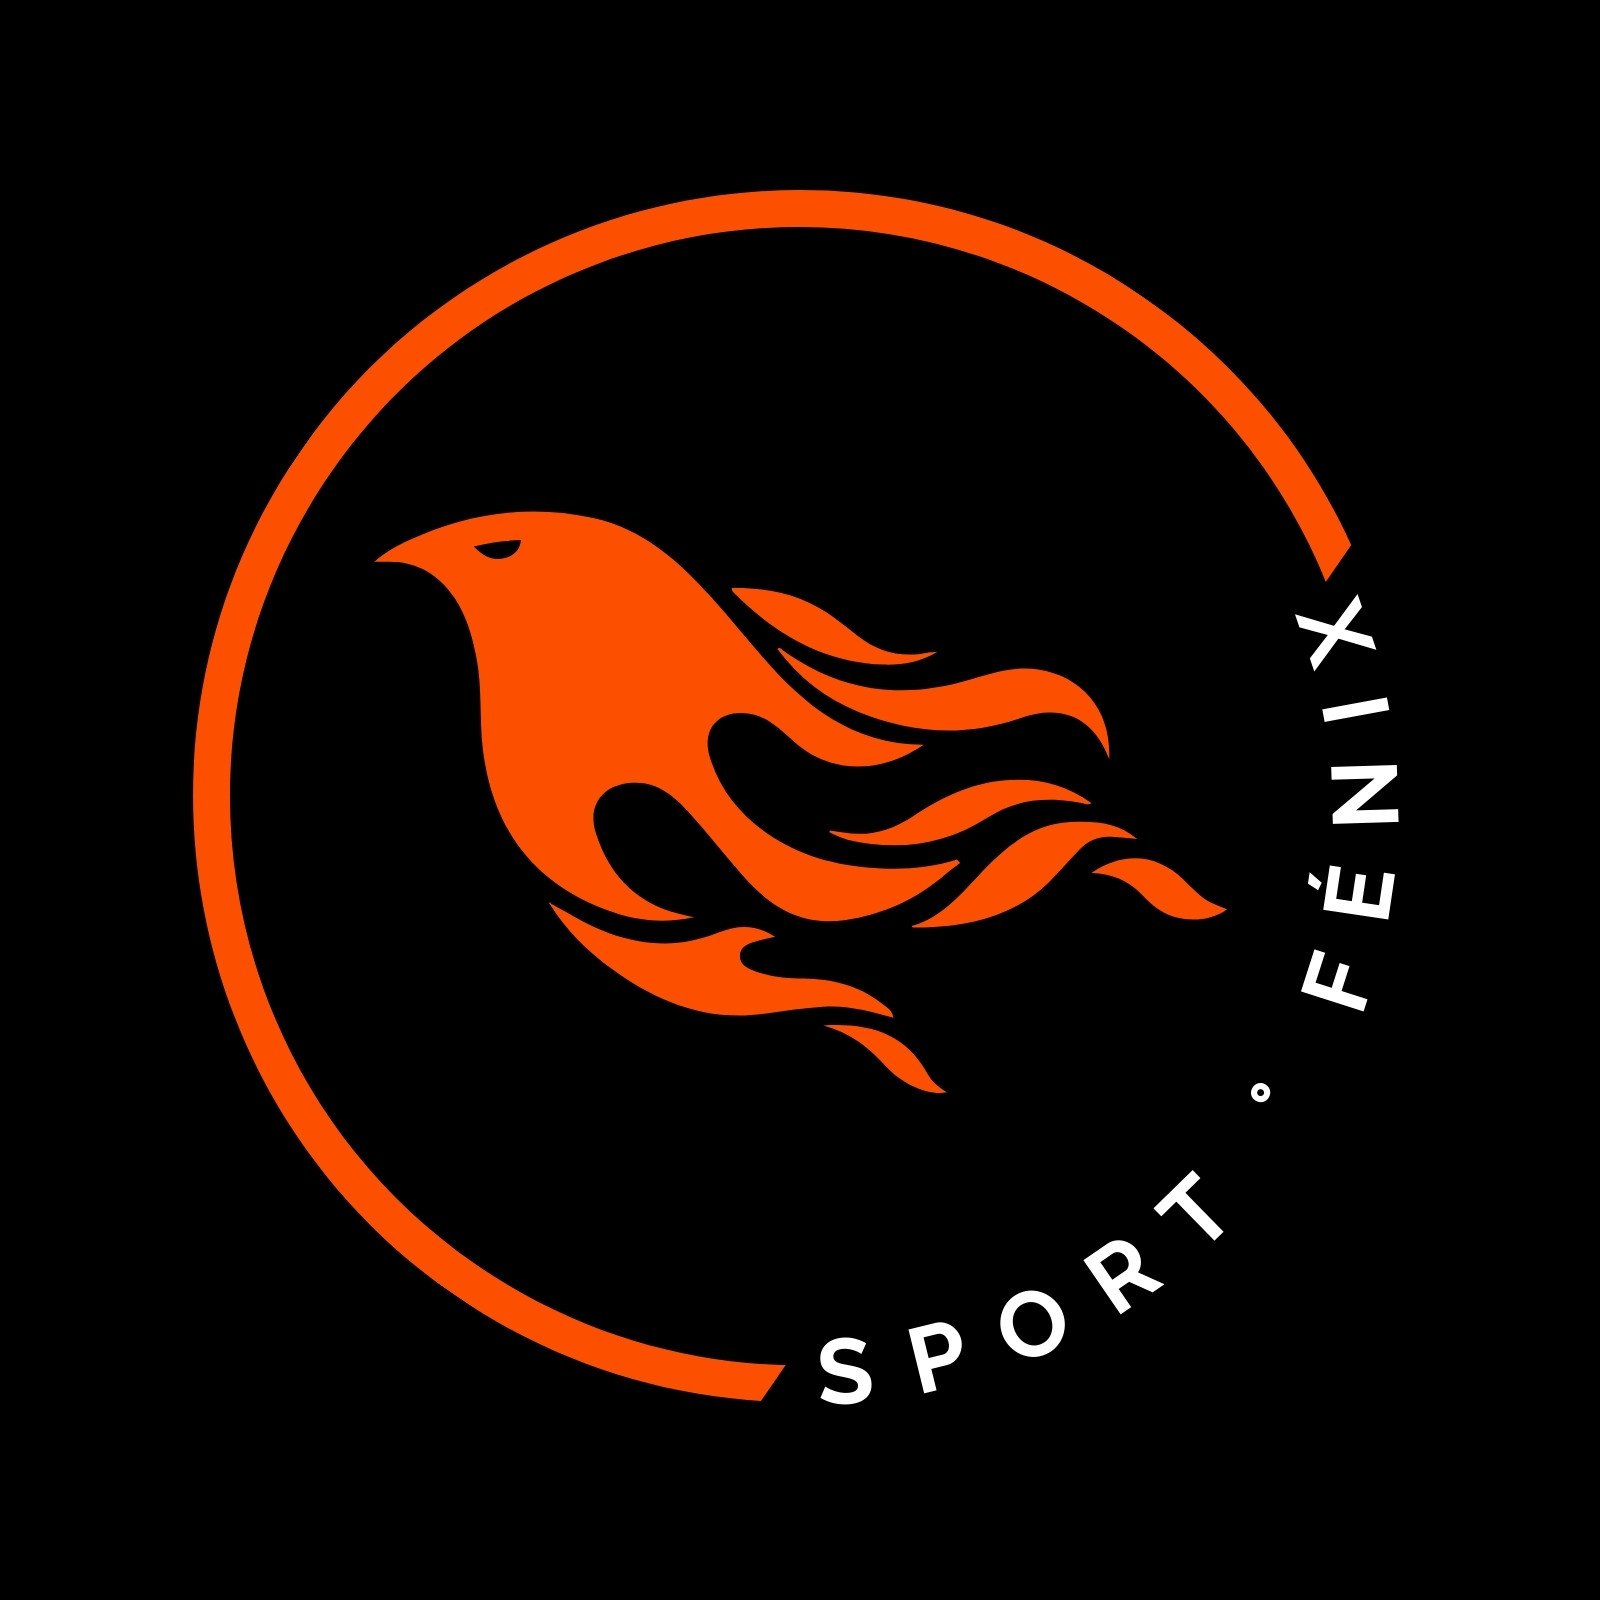 Logo deportivo de ave fénix naranjado con negro y blanco